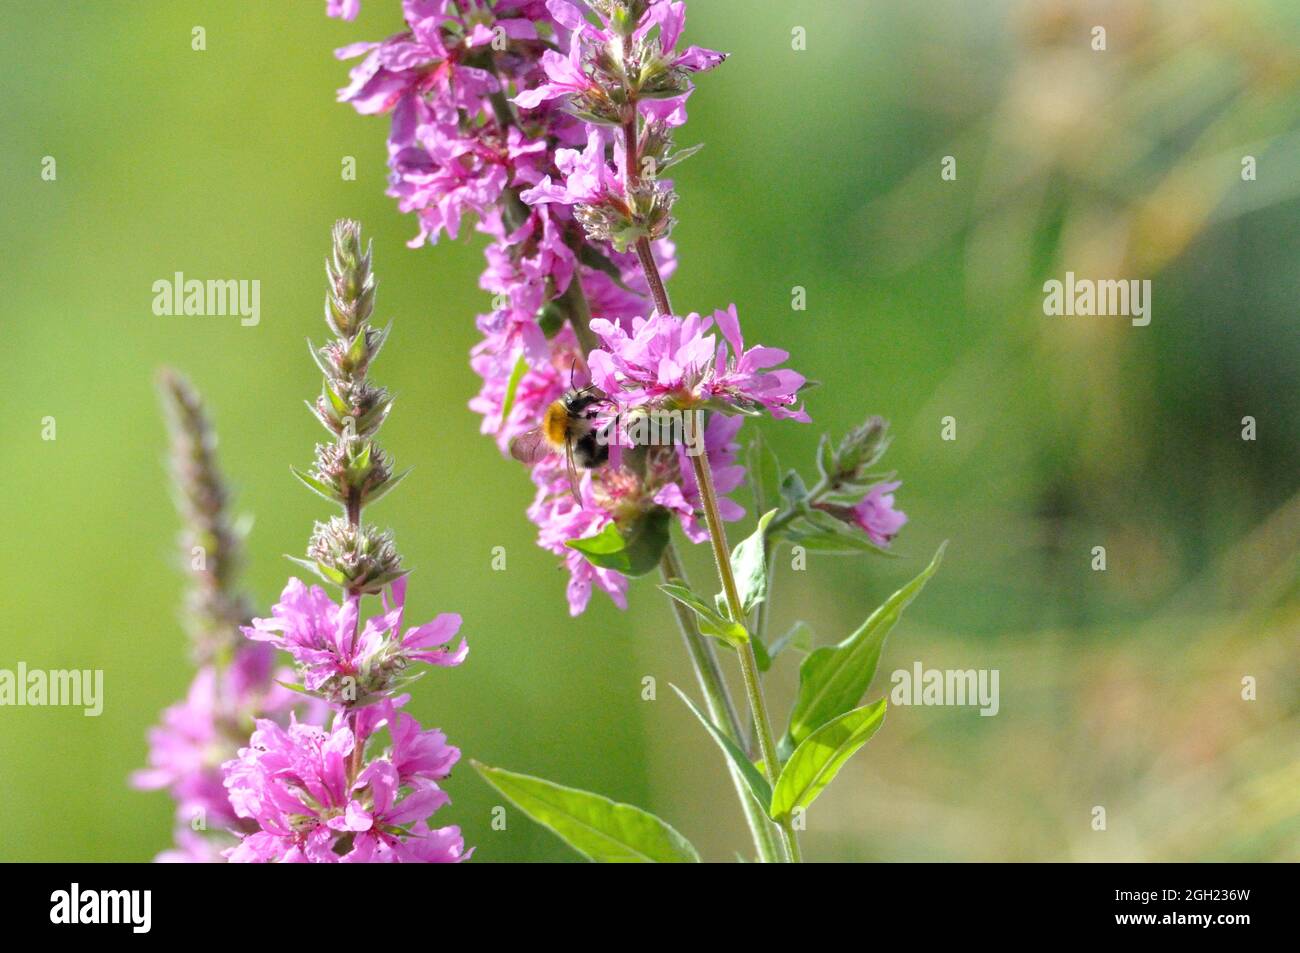 Gewöhnlicher Blutweiderich (Lythrum salicaria) im Garten an einem künstlichen Gartenteich lädt Insekten (hier Bienen) zum Naschen ein. - perde viola Foto Stock